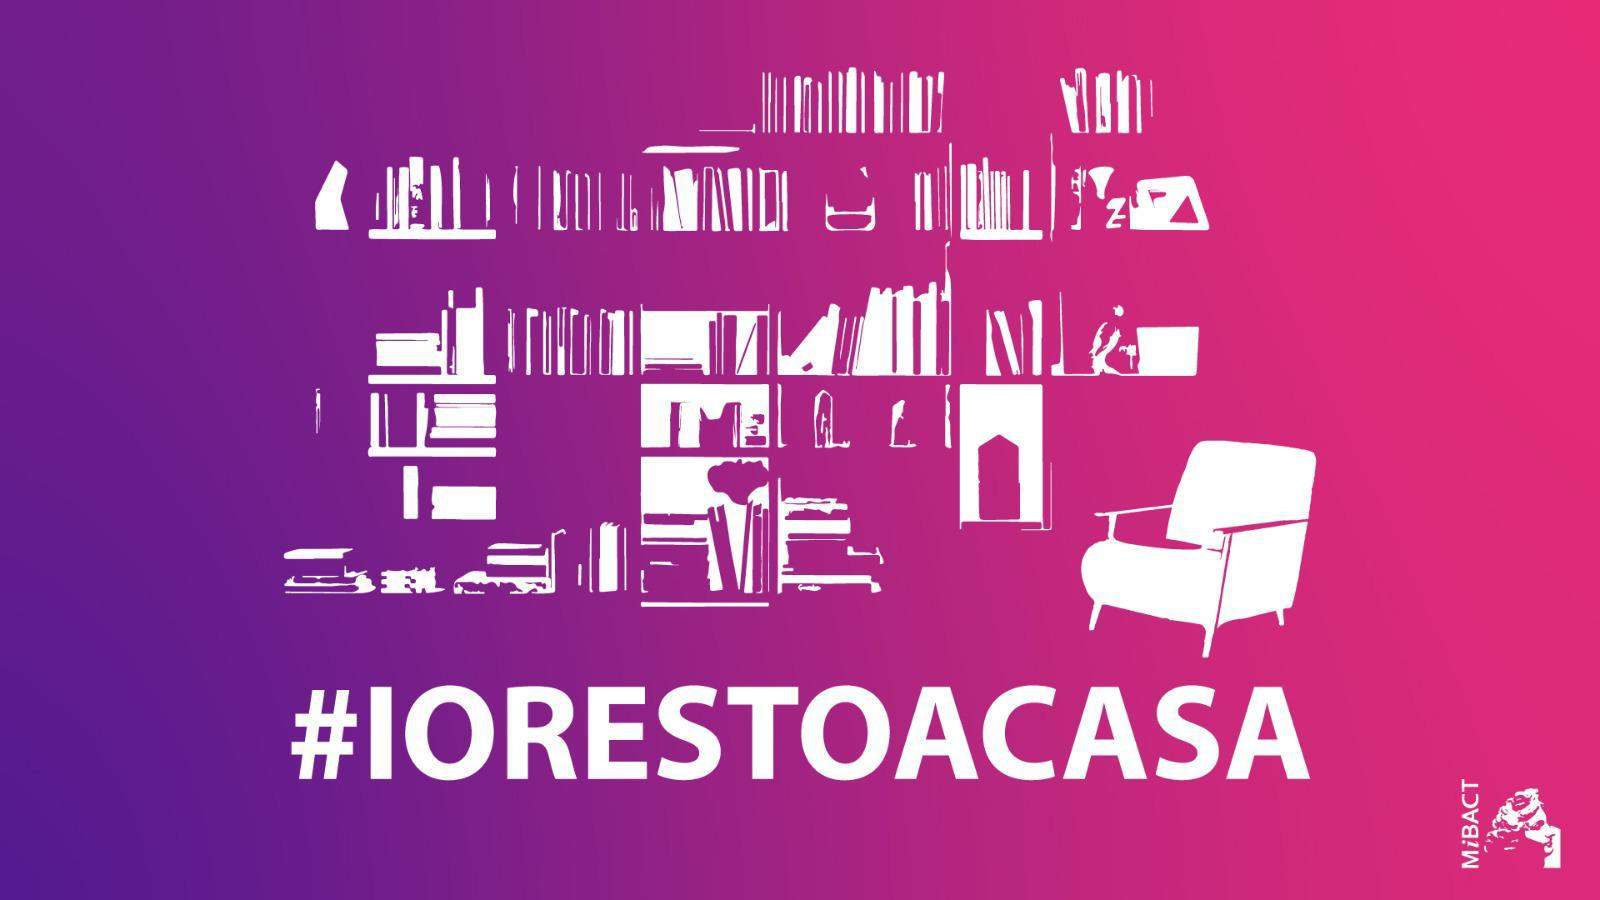 Restez chez vous ! Les artistes et les musées vous le disent aussi. #iorestoacasa est le hashtag à faire circuler